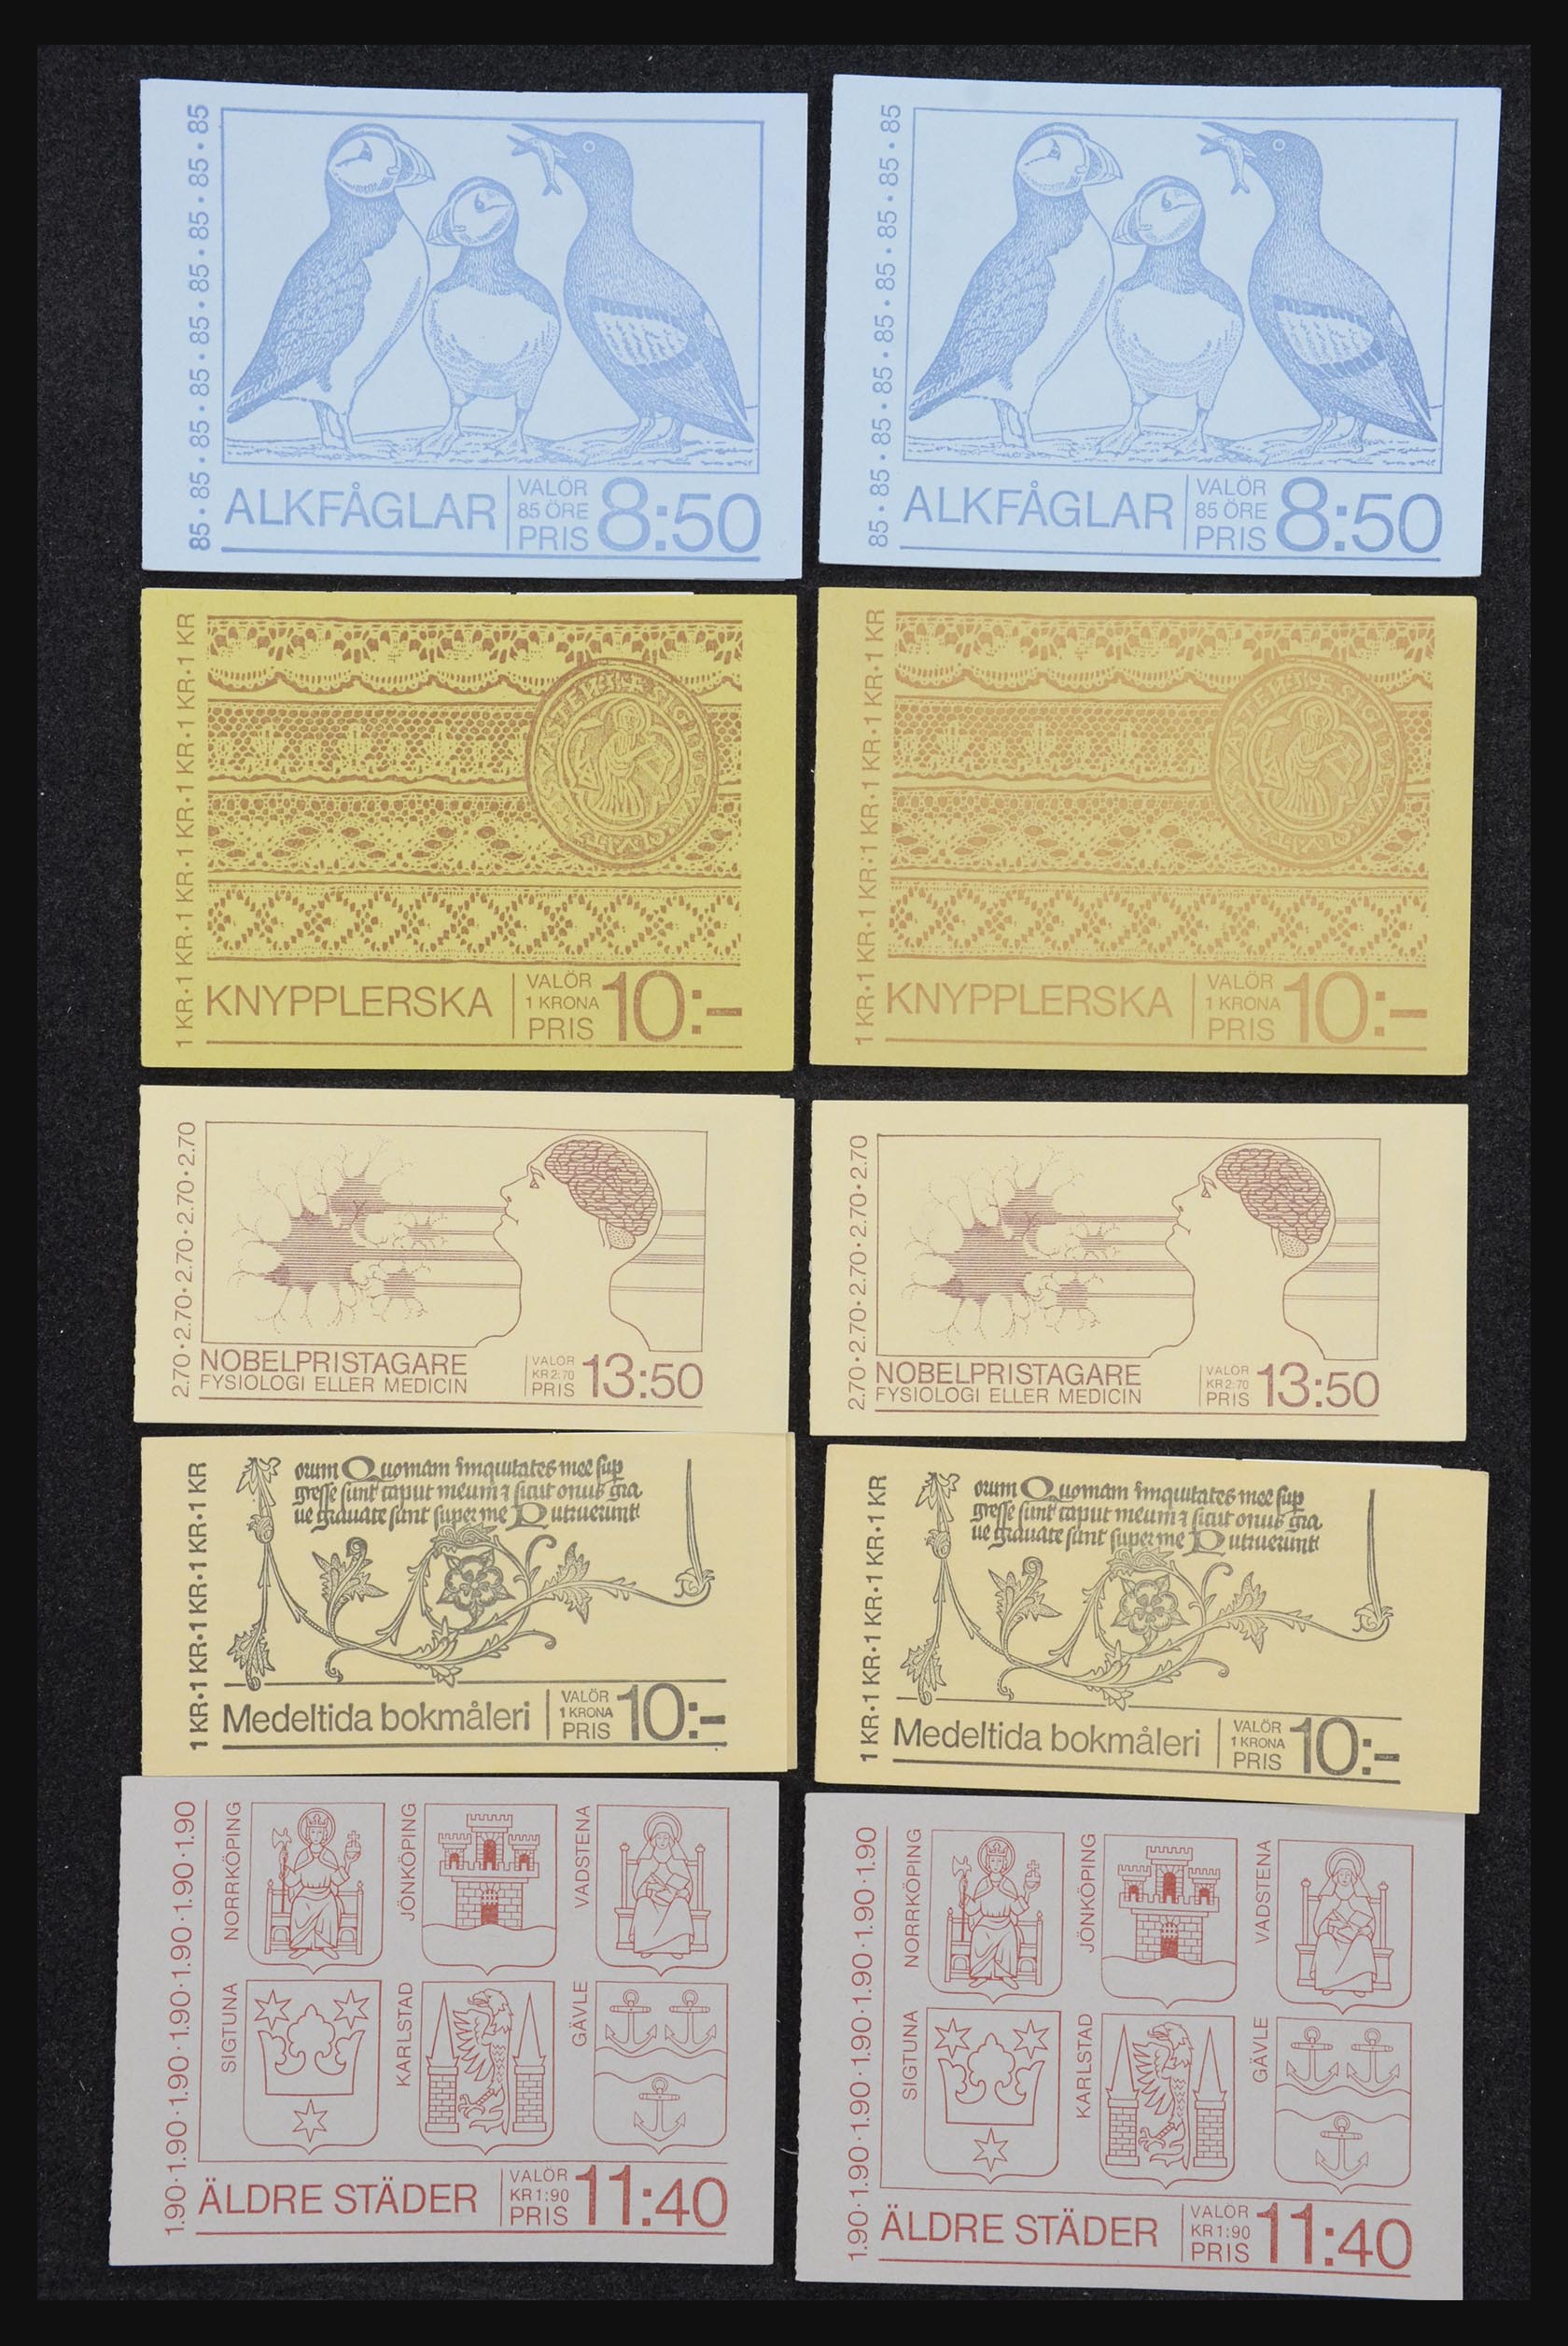 32026 058 - 32026 Sweden stampbooklets 1949-1990.